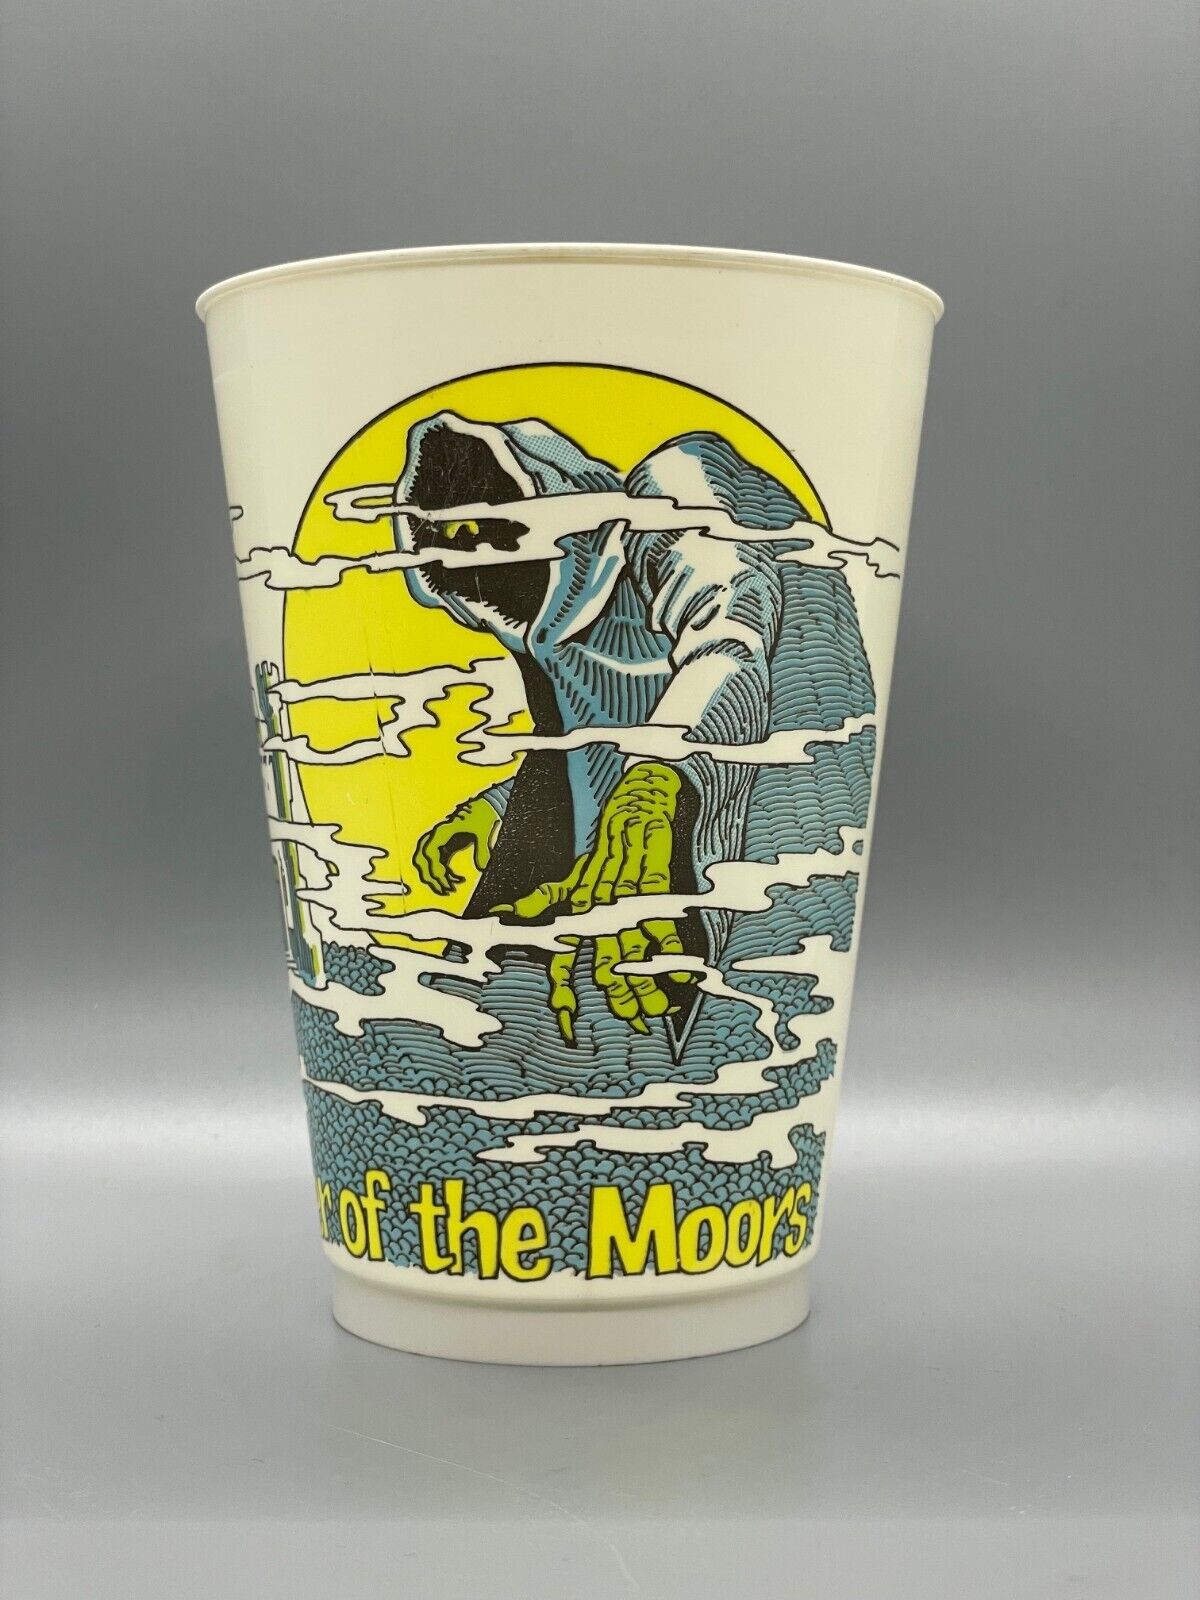 Vintage 7-11 7-Eleven Slurpee Monster Series Cup 1976: MONSTER OF THE MOORS